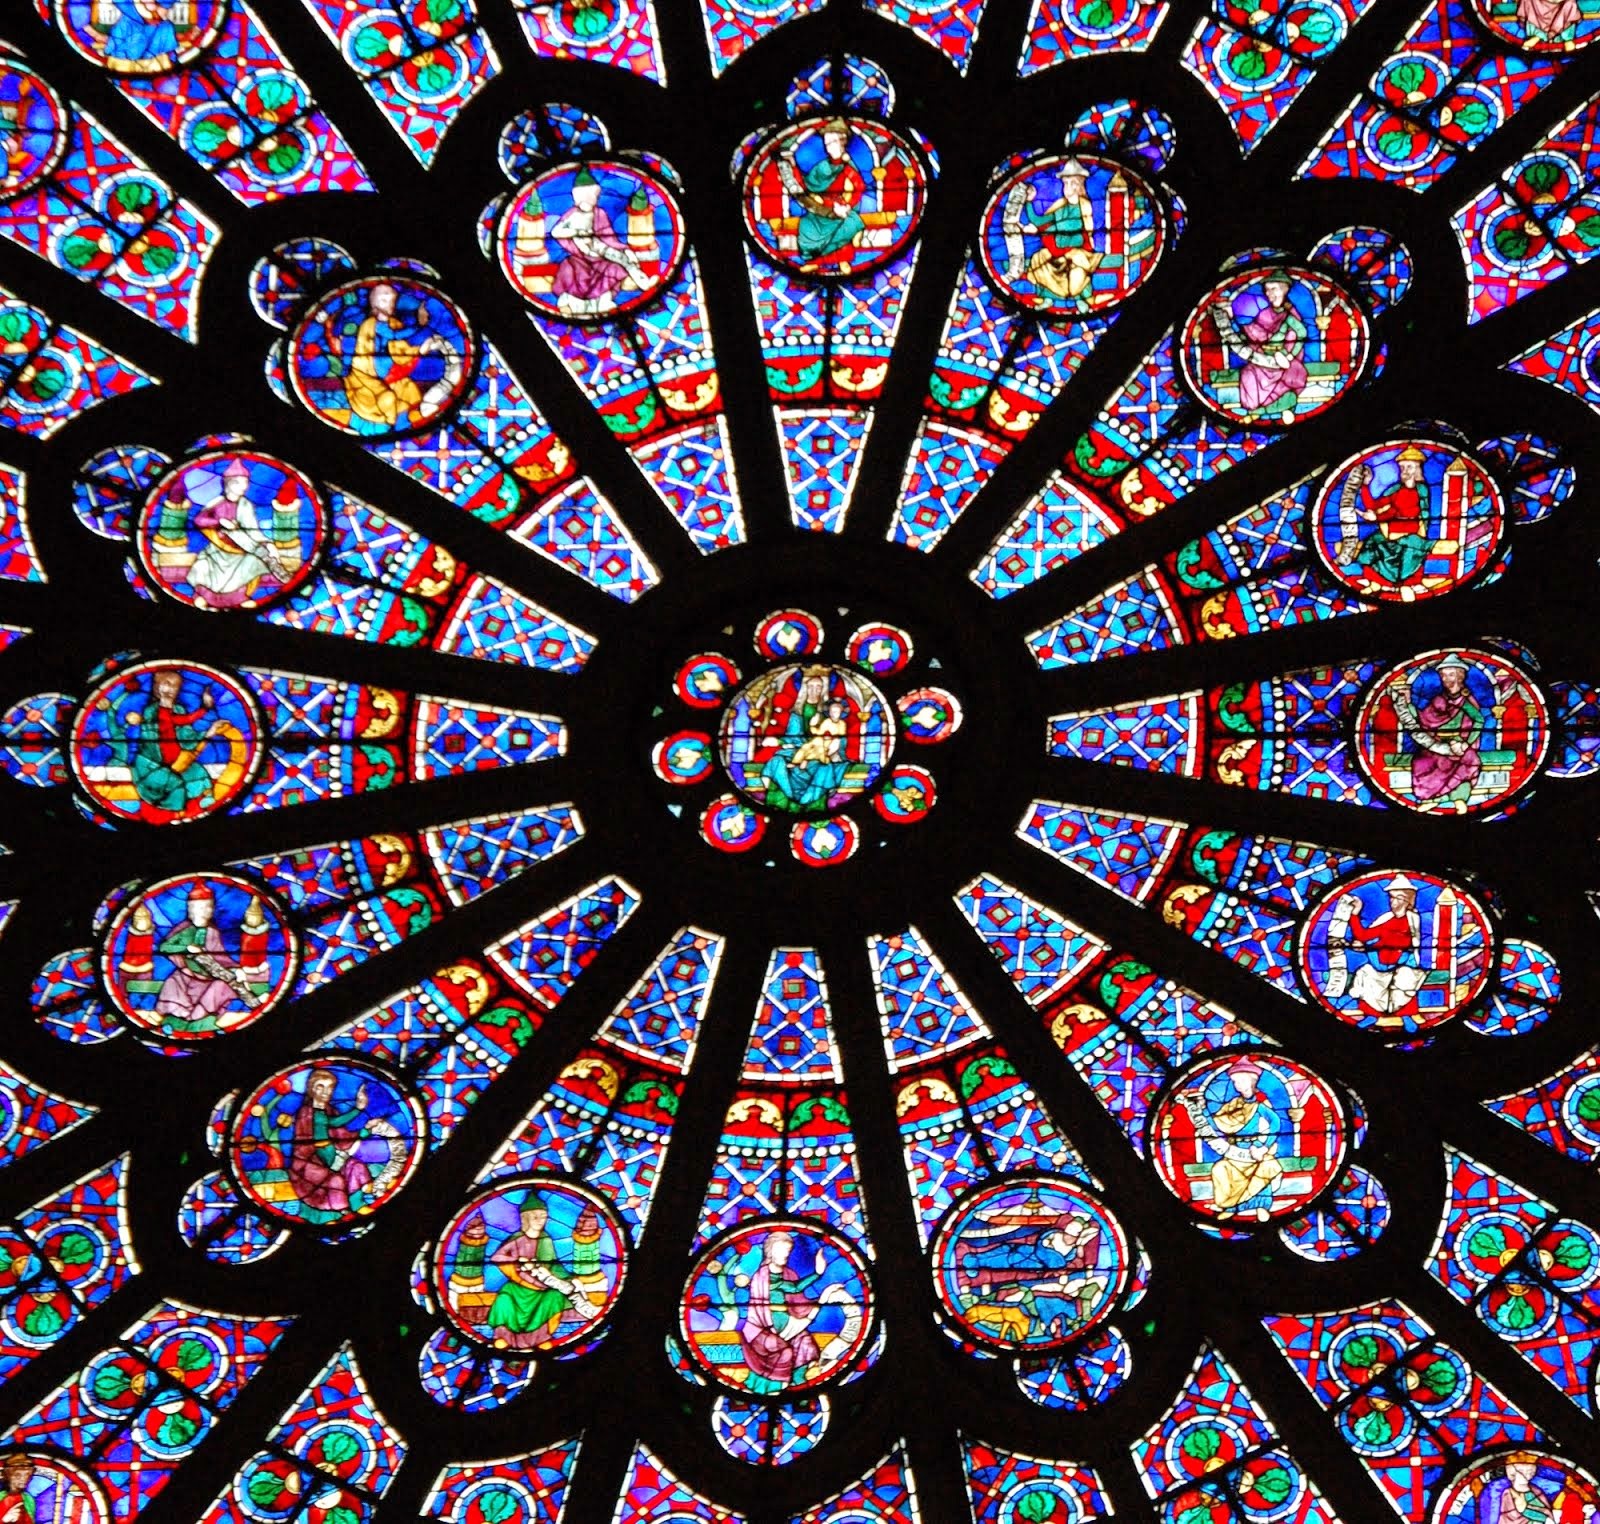 Le Rosaire de Notre Dame de Paris